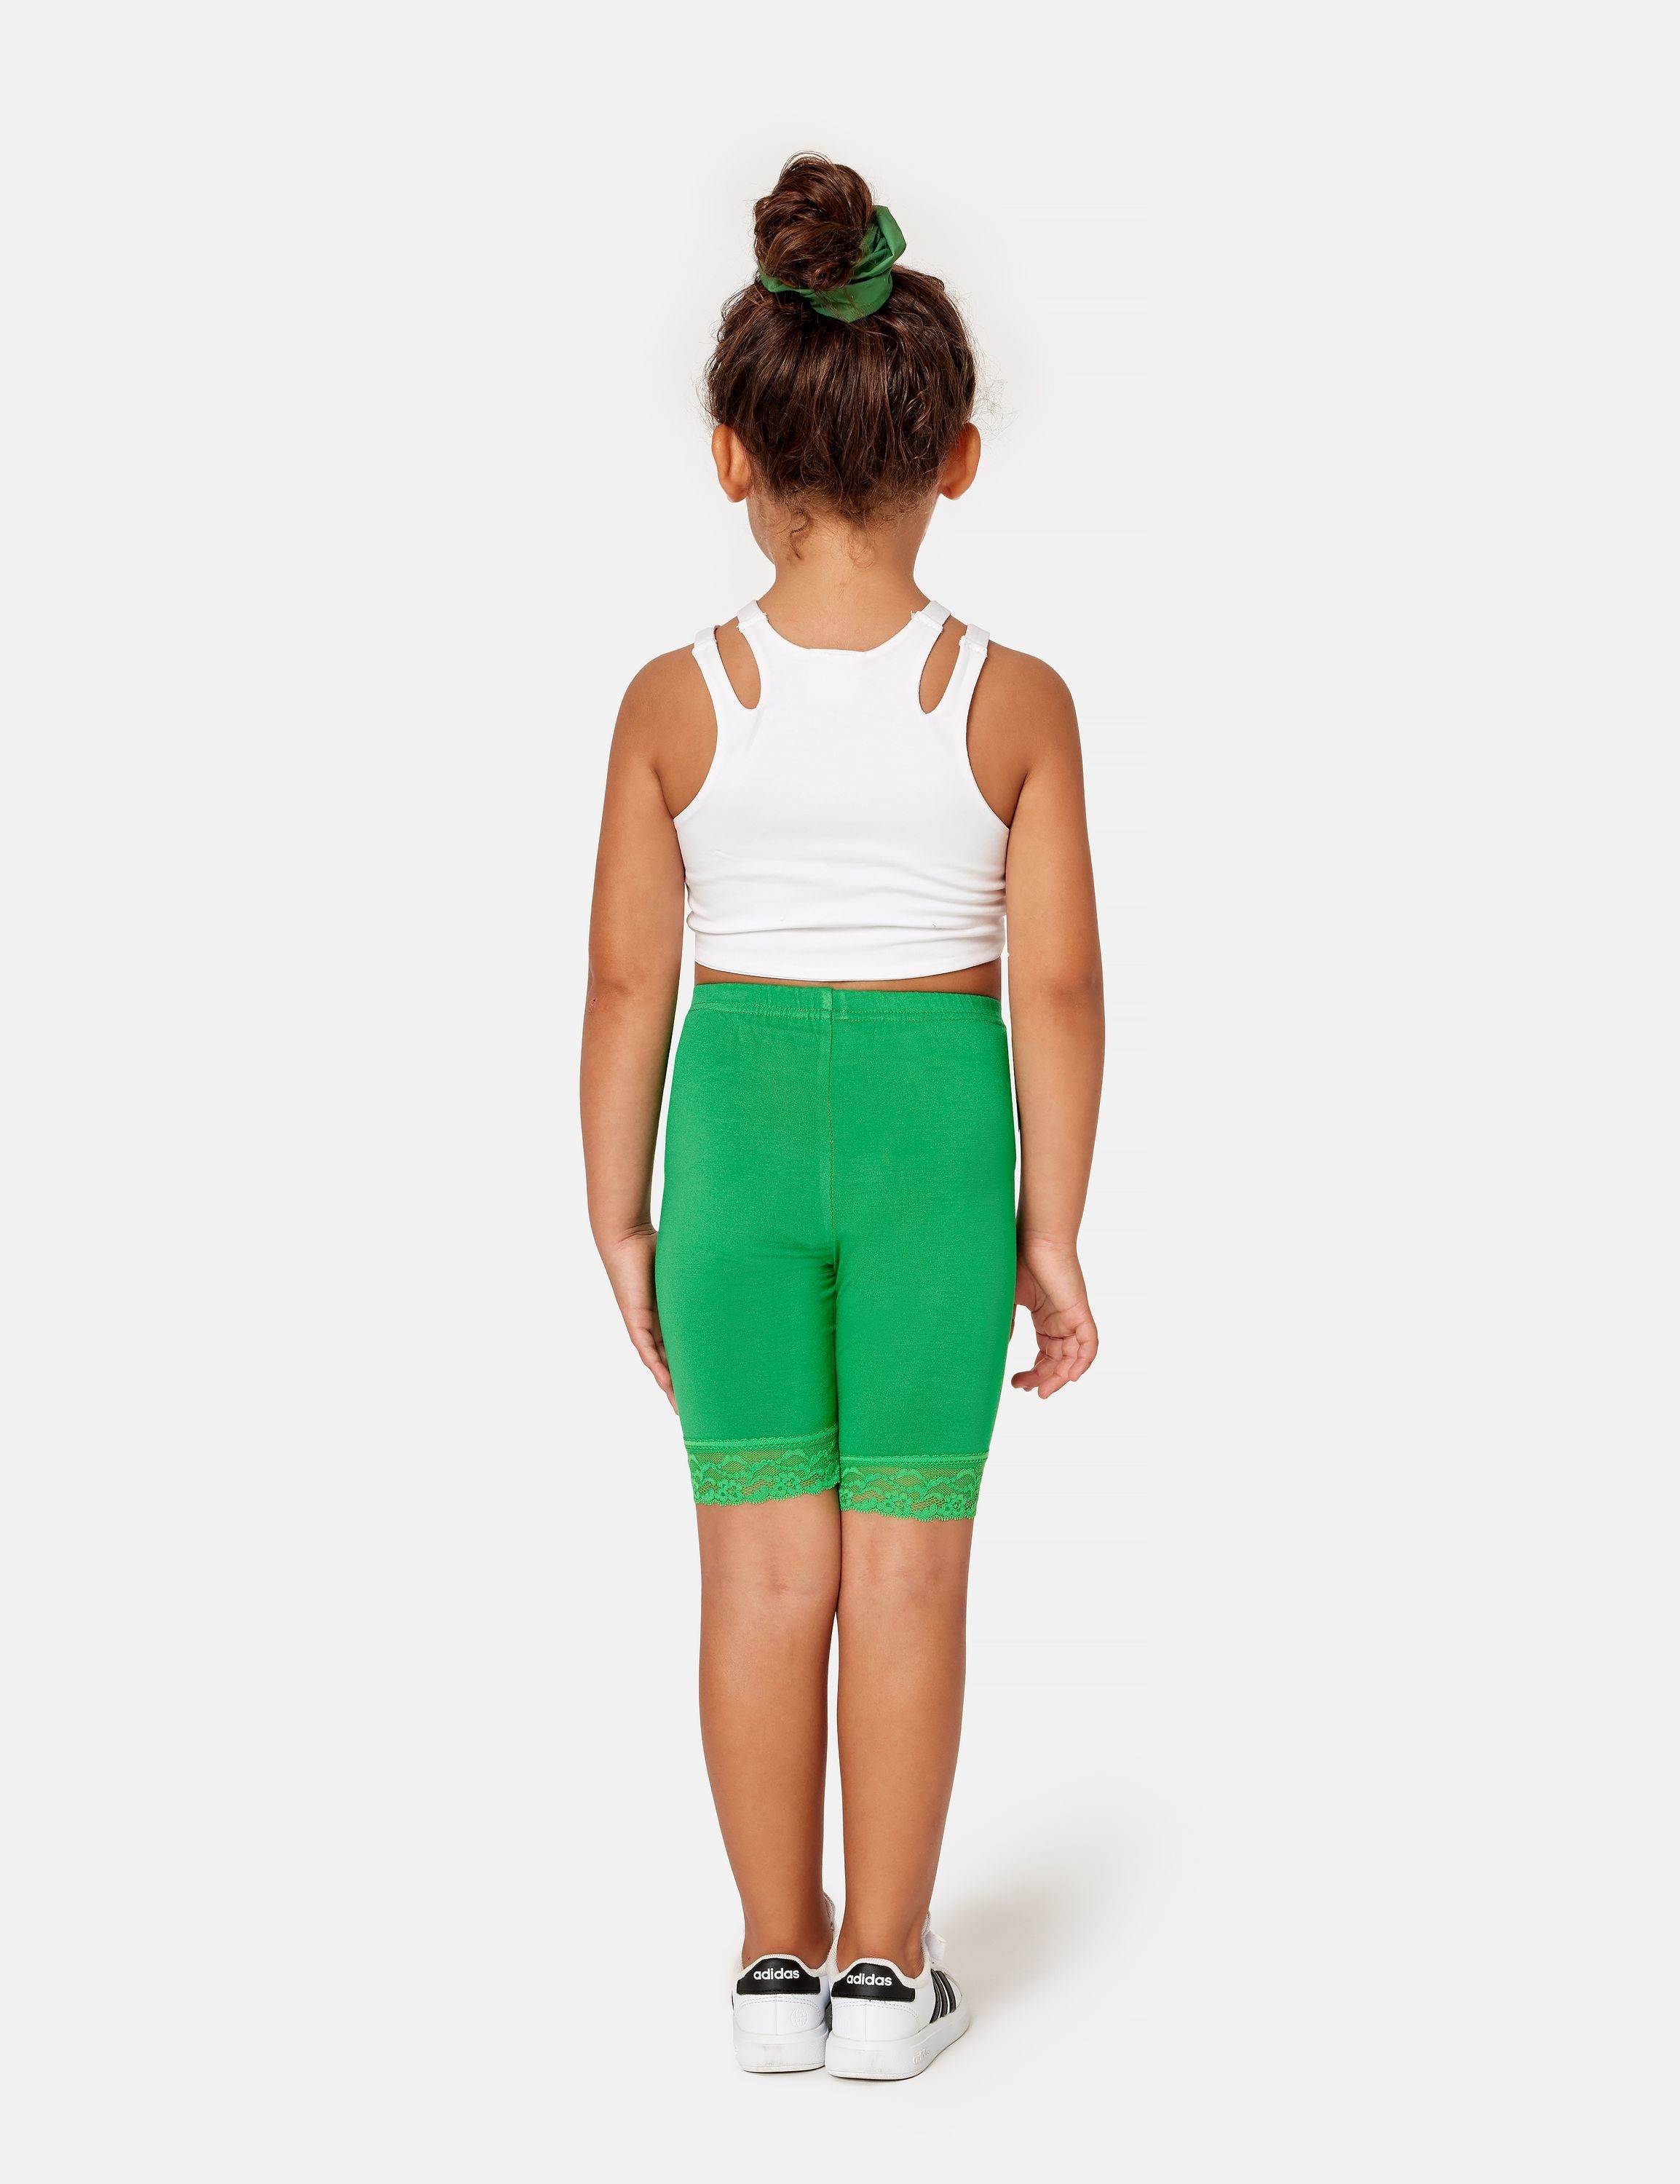 Merry aus Grün MS10-434 Kurze Bund Leggings Viskose elastischer (1-tlg) Mädchen Leggings Style